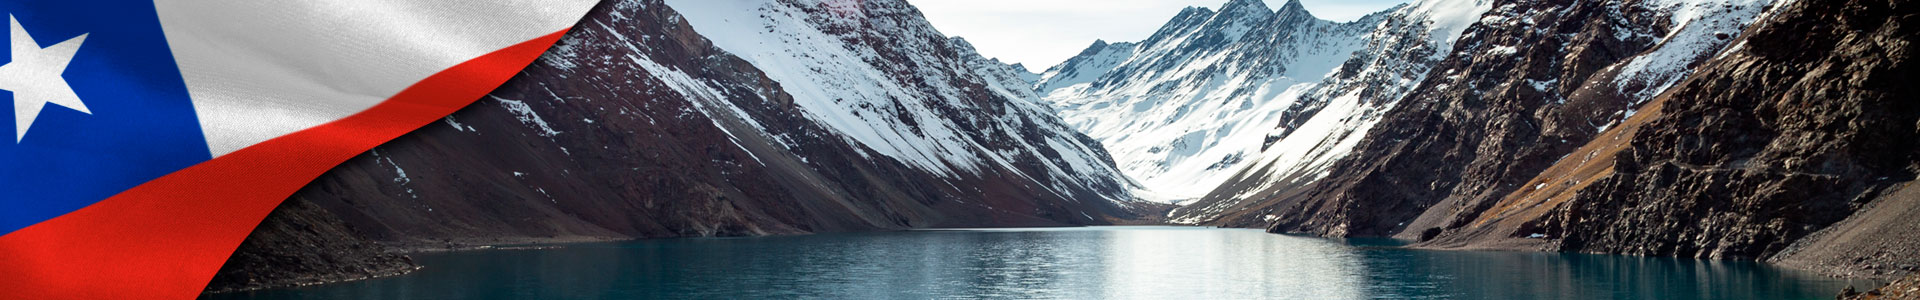 Bandera de Chile con foto de lago laguna del inca rodeado de altas montañas cubiertas de nieve en Chile